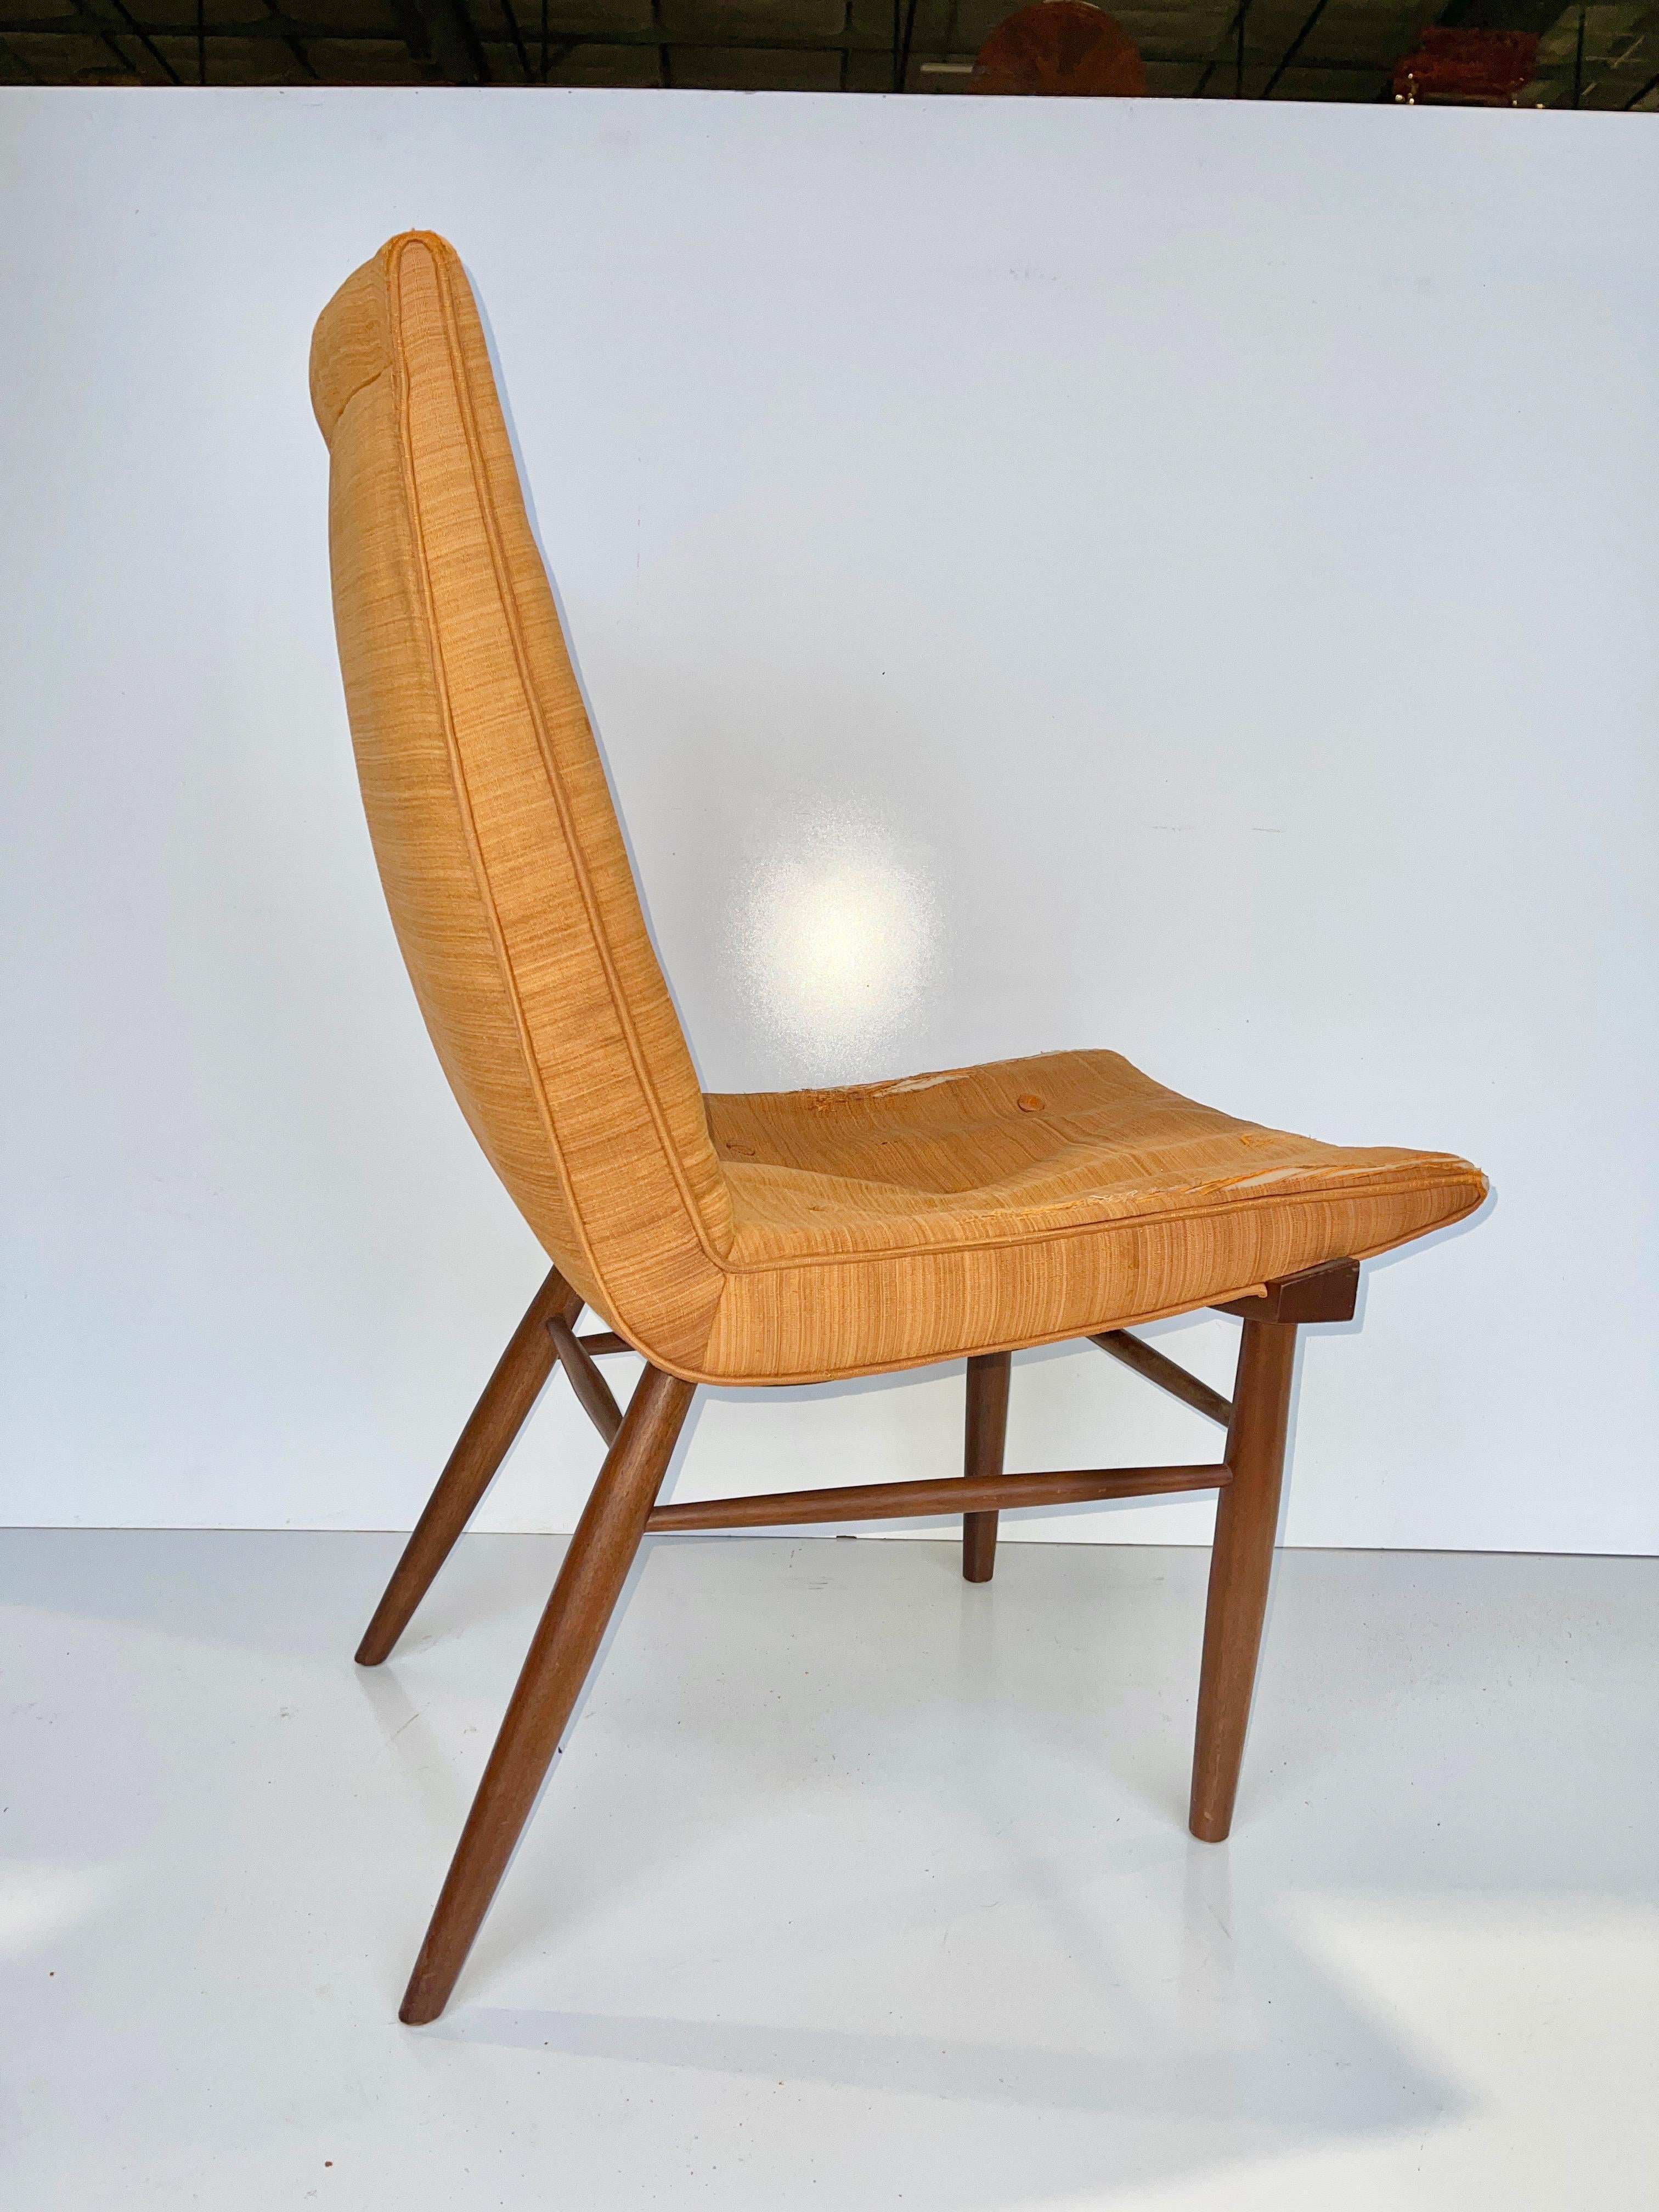 George Nakashima entwarf den Stuhl Model 206 für die Origins Collection'S von Widdicomb.
Ursprünglicher Zustand, ohne jegliche Restaurierung oder Nachbearbeitung. Fugen und Dübel dicht.
Original-Polsterung. Der Schaum ist getrocknet und